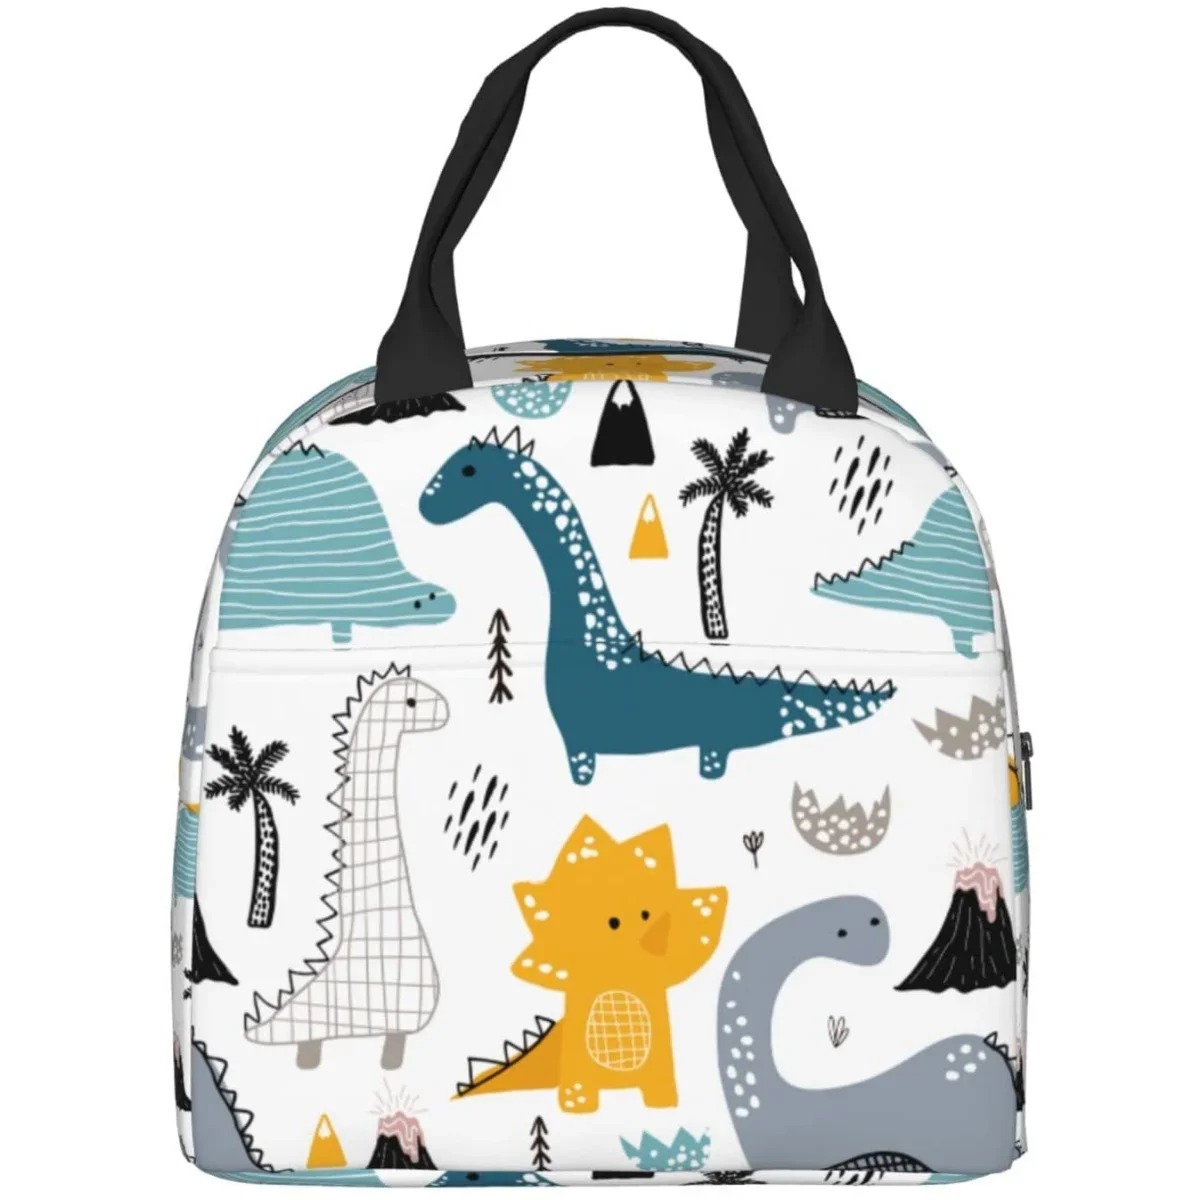 

Милый Ланч-бокс с динозавром-Изолированные сумки для детей, женские многоразовые сумки-тоуты для ланча, идеально подходит для школы/пикника/пляжа/путешествий